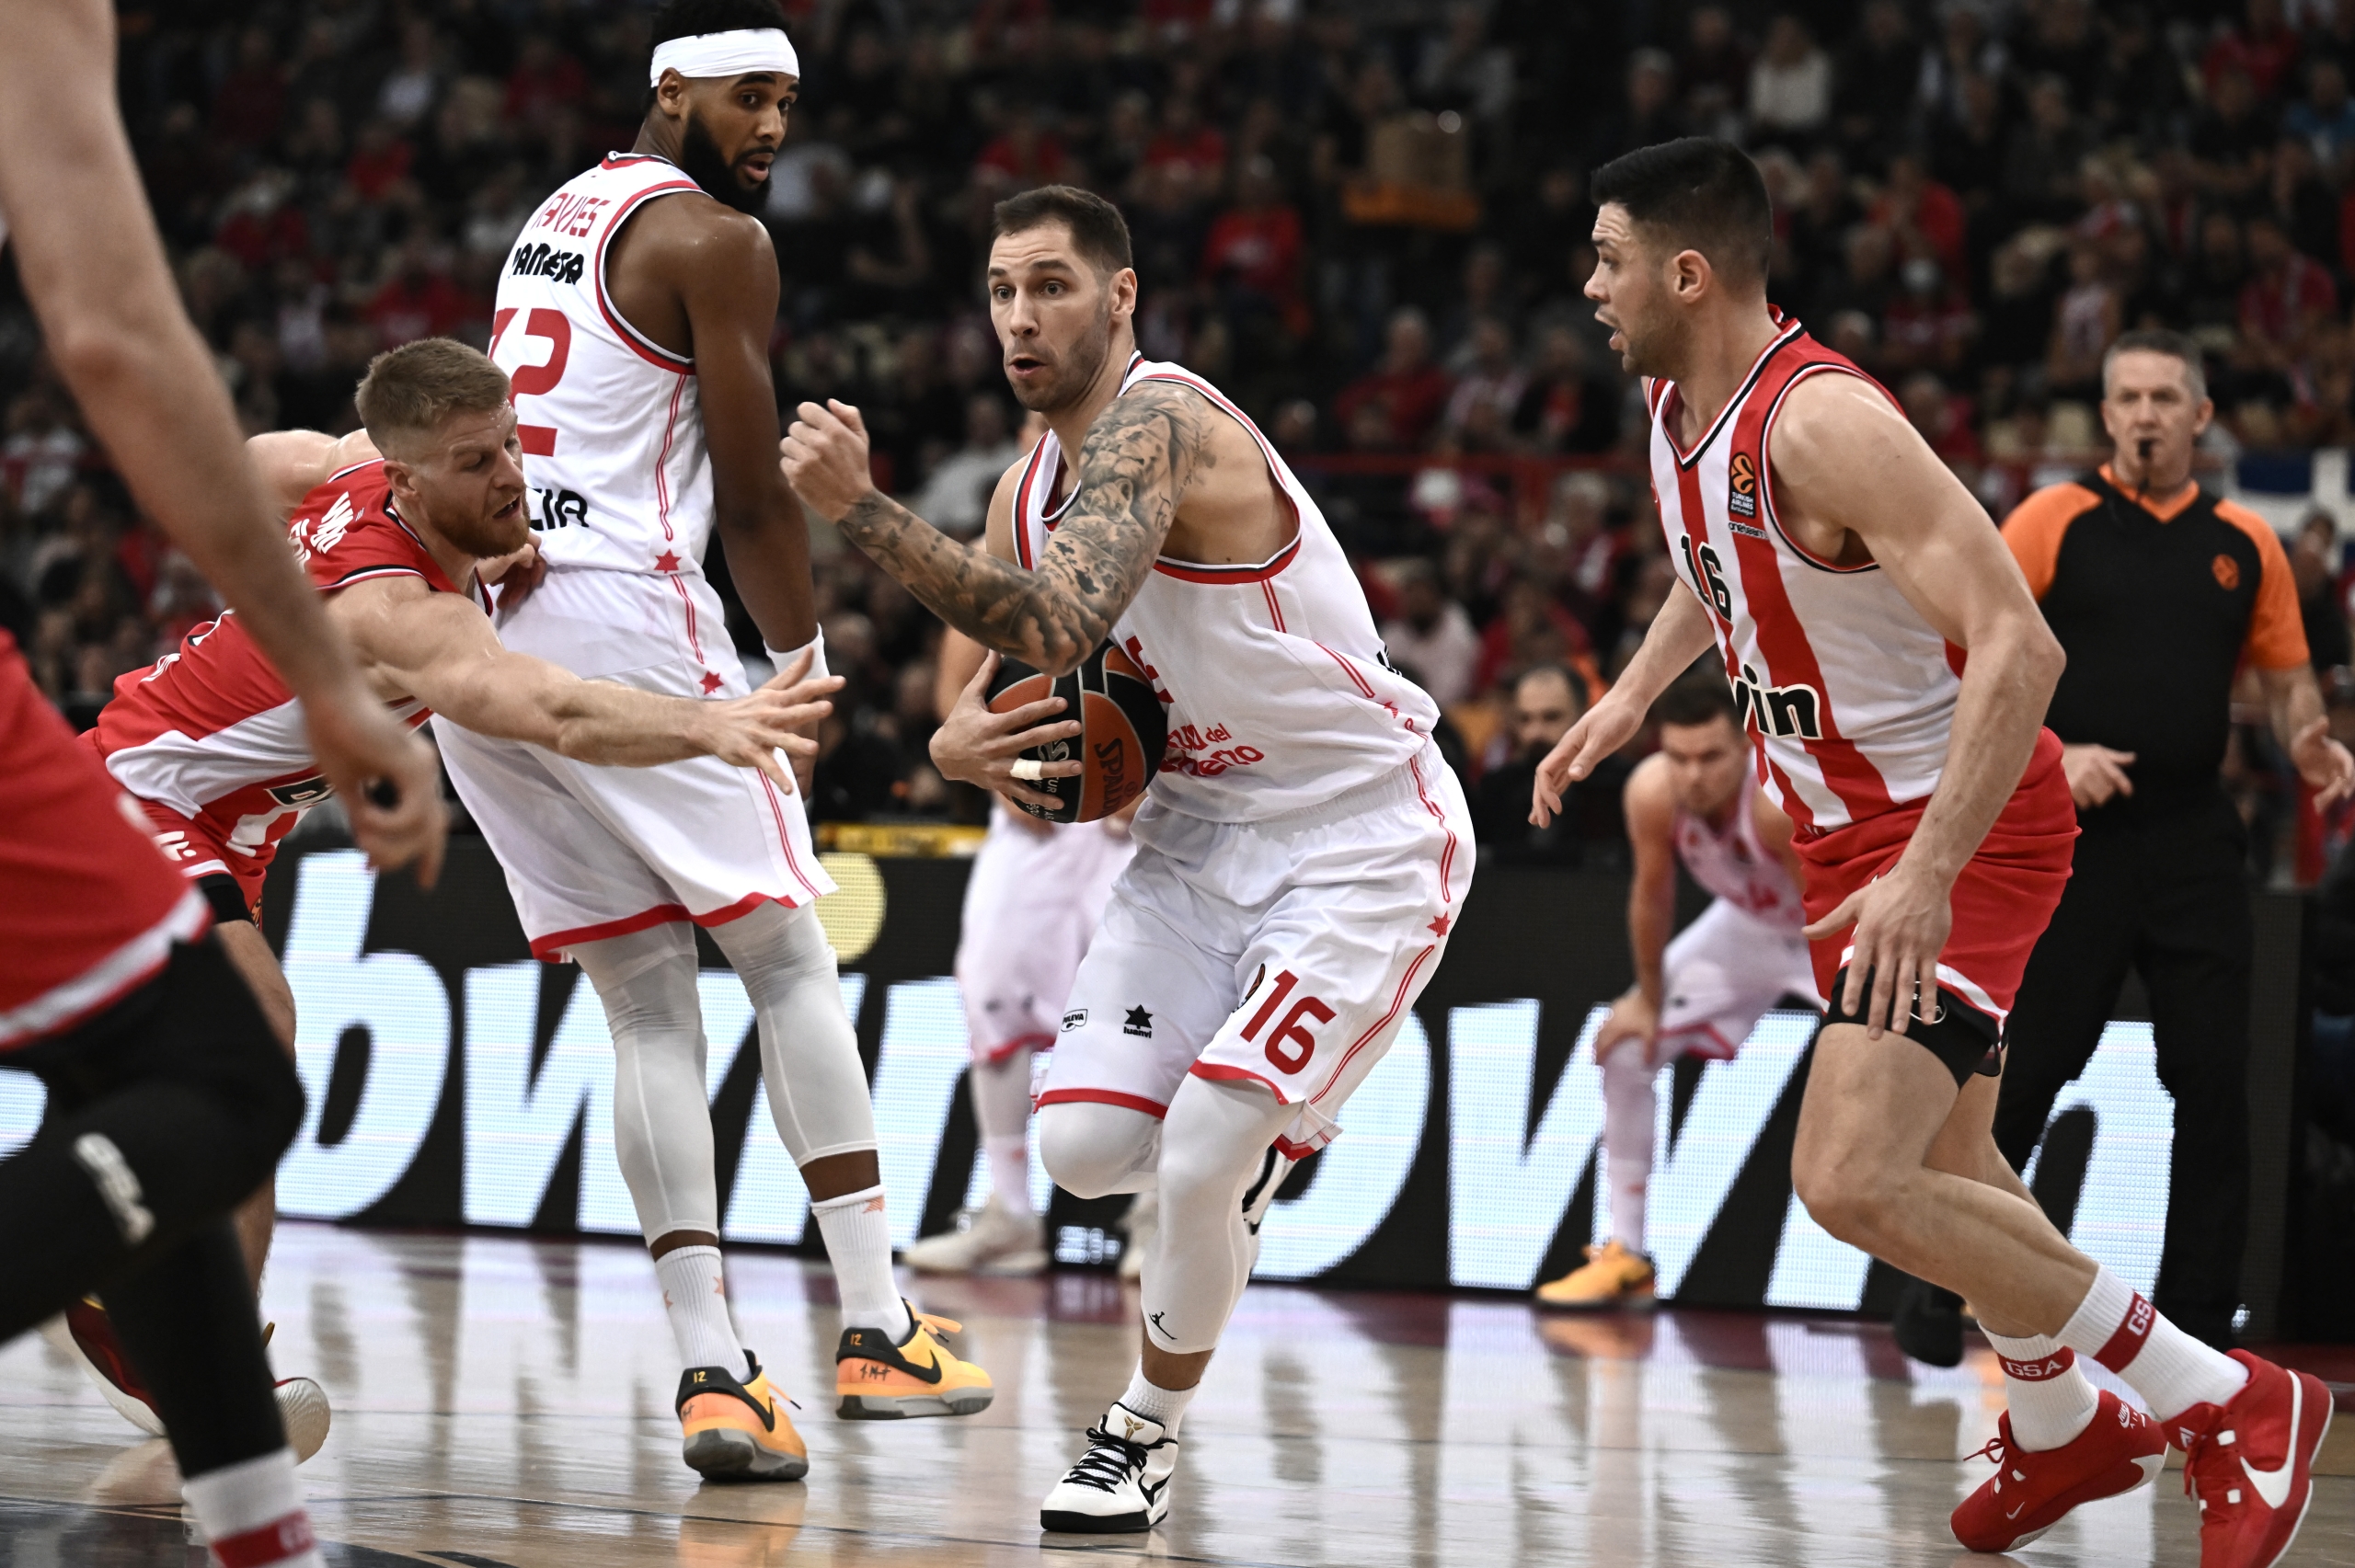 Source: Panagiotis Moschandreou/Euroleague Basketball via Getty Images